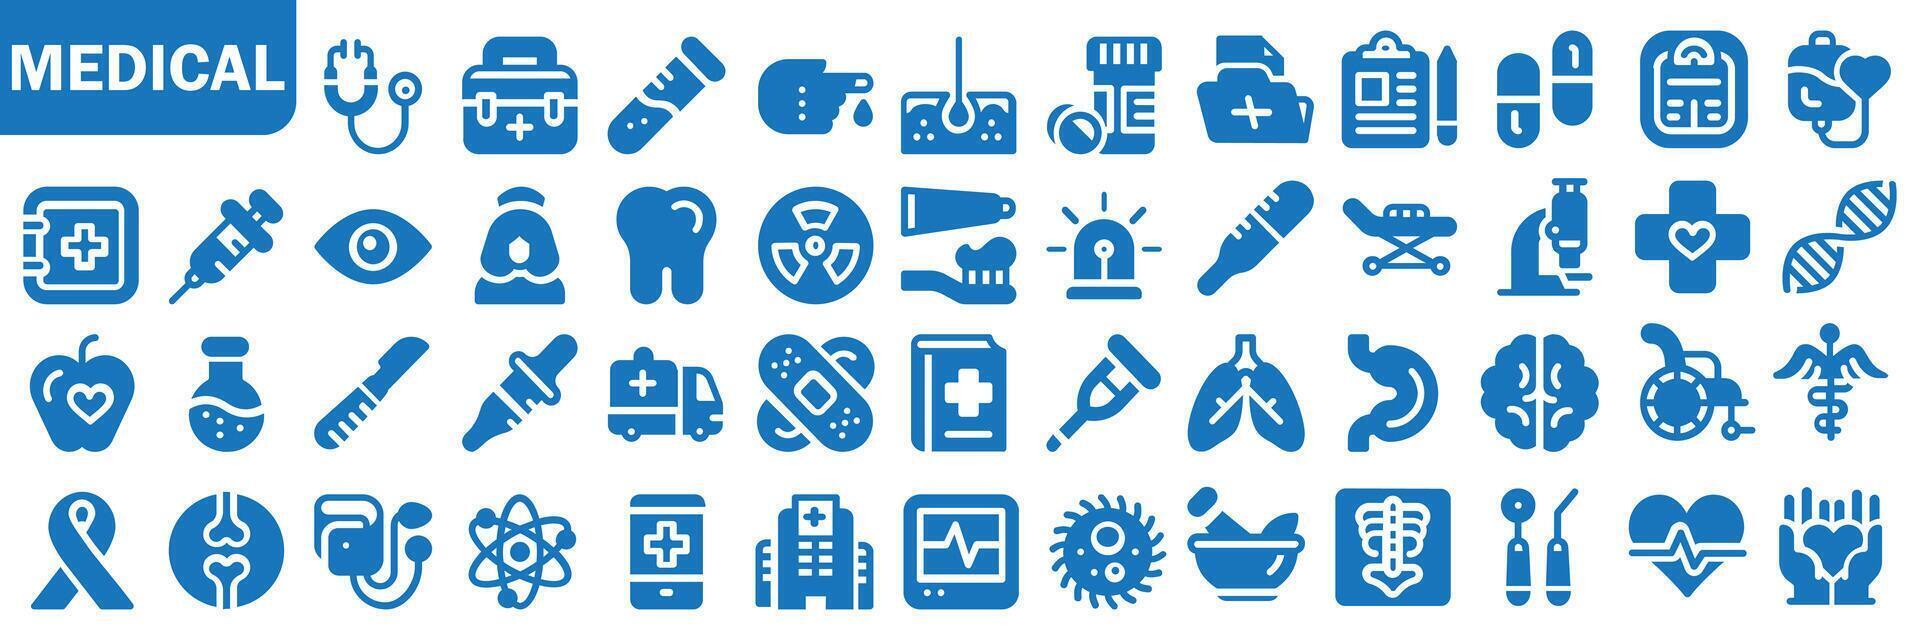 coleção do médico ícones. remédio e cuidados de saúde ícones definir. coleção do médico símbolos. eps 10 vetor